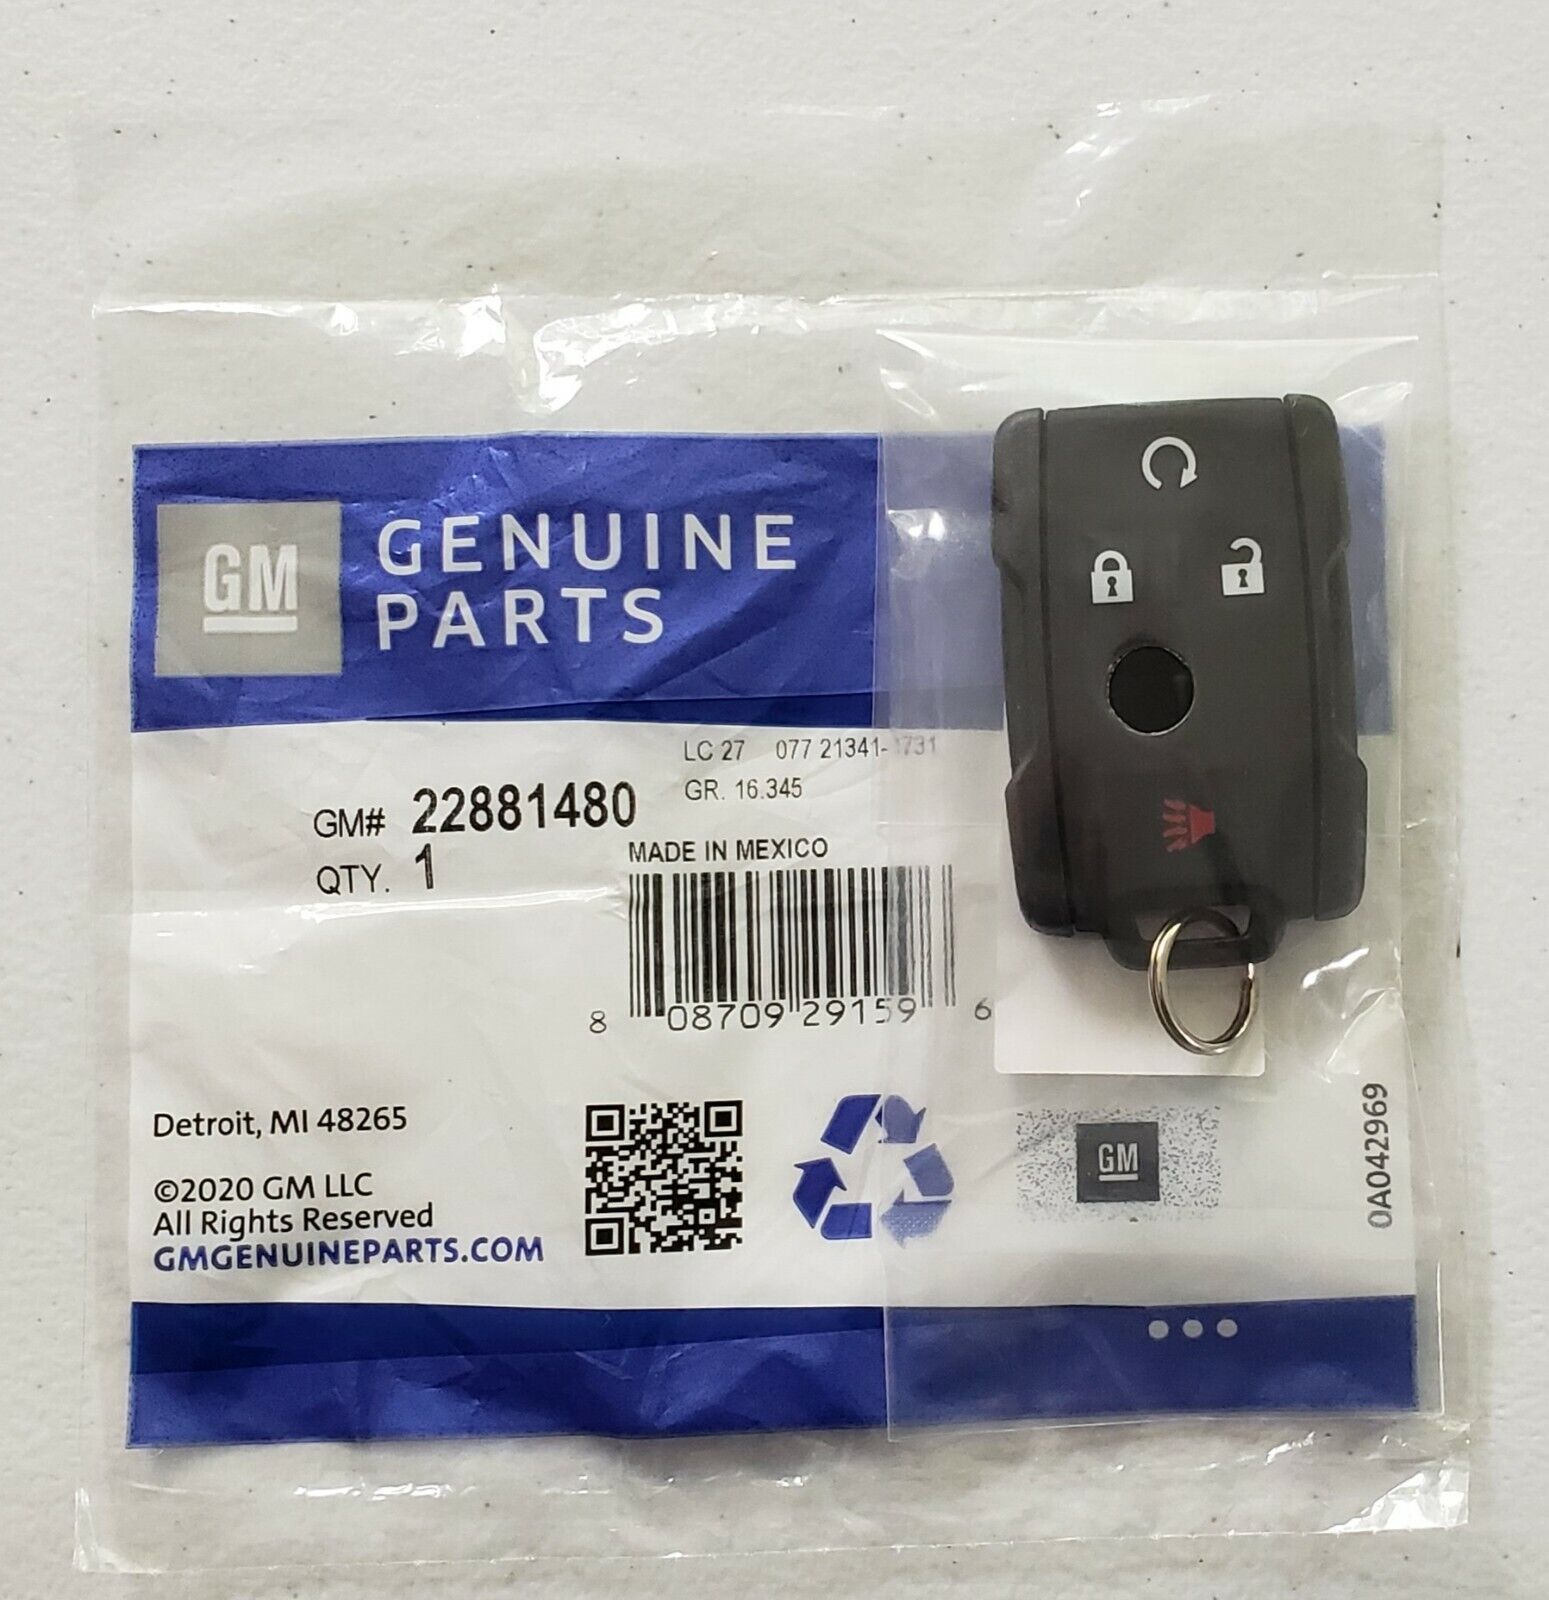 2014-2020 GMC Chevrolet Keyless Remote Entry Key Fob GM 22881480 OEM